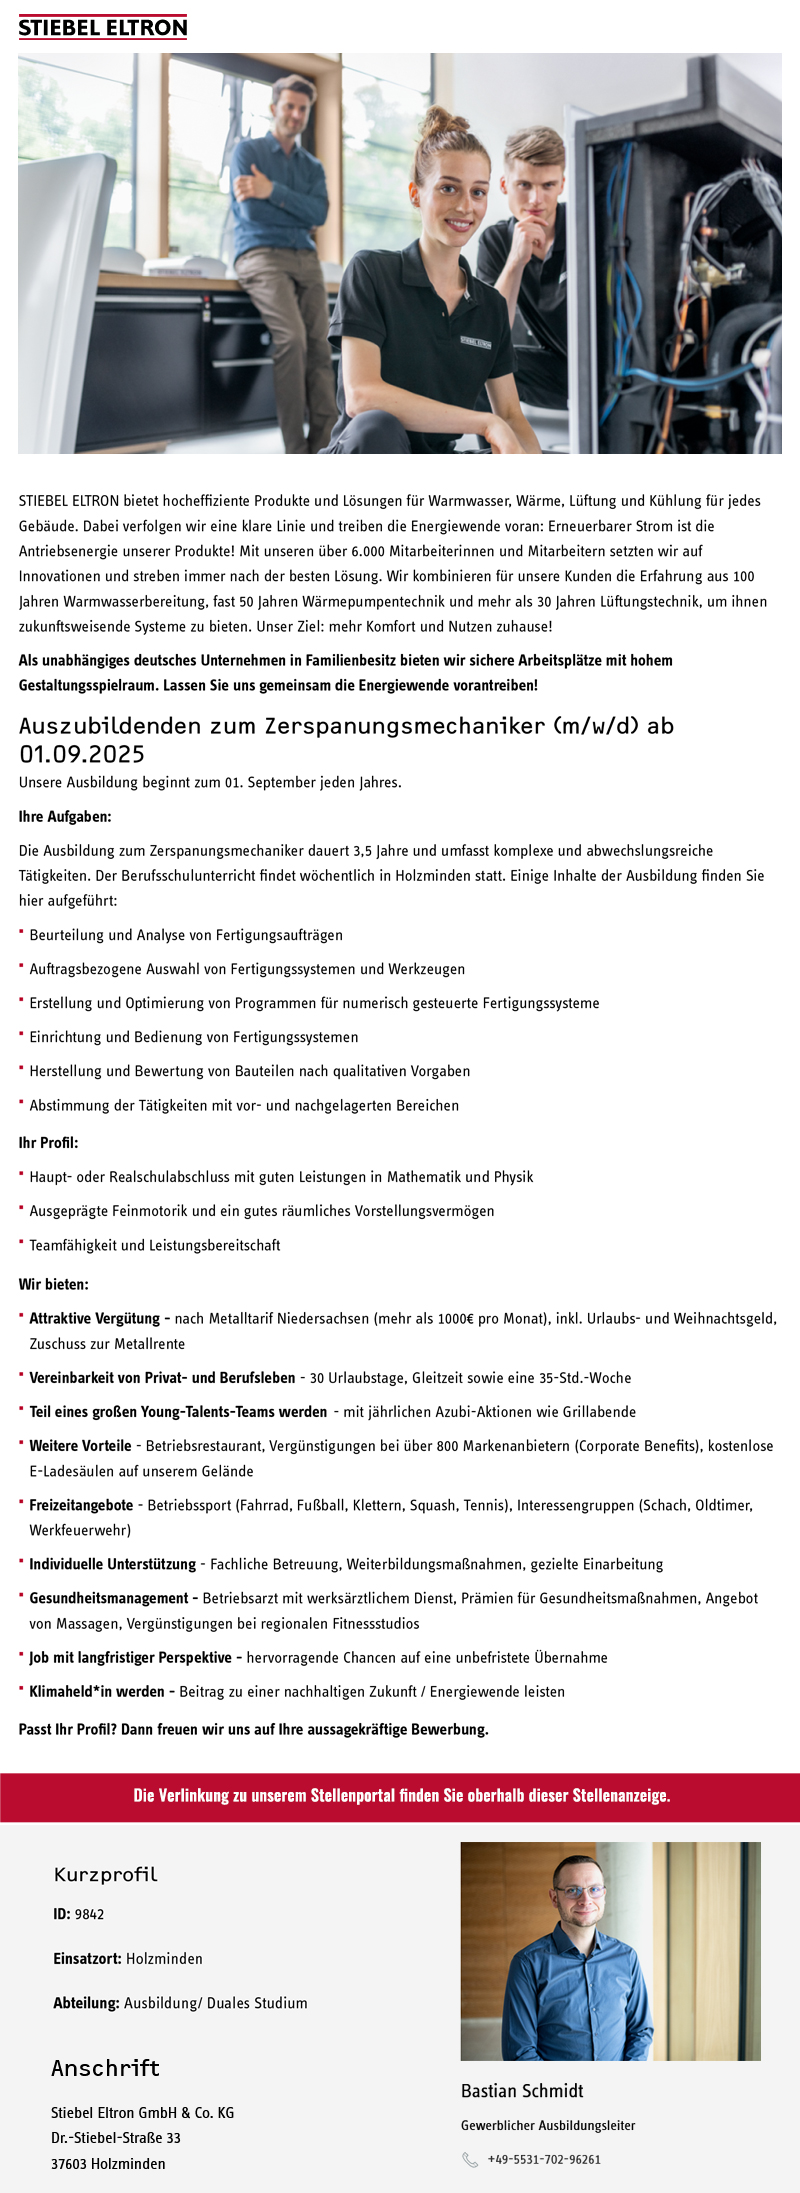 Auszubildenden zum Zerspanungsmechaniker (m/w/d) ab 01.09.2025 - Stiebel Eltron GmbH & Co. KG